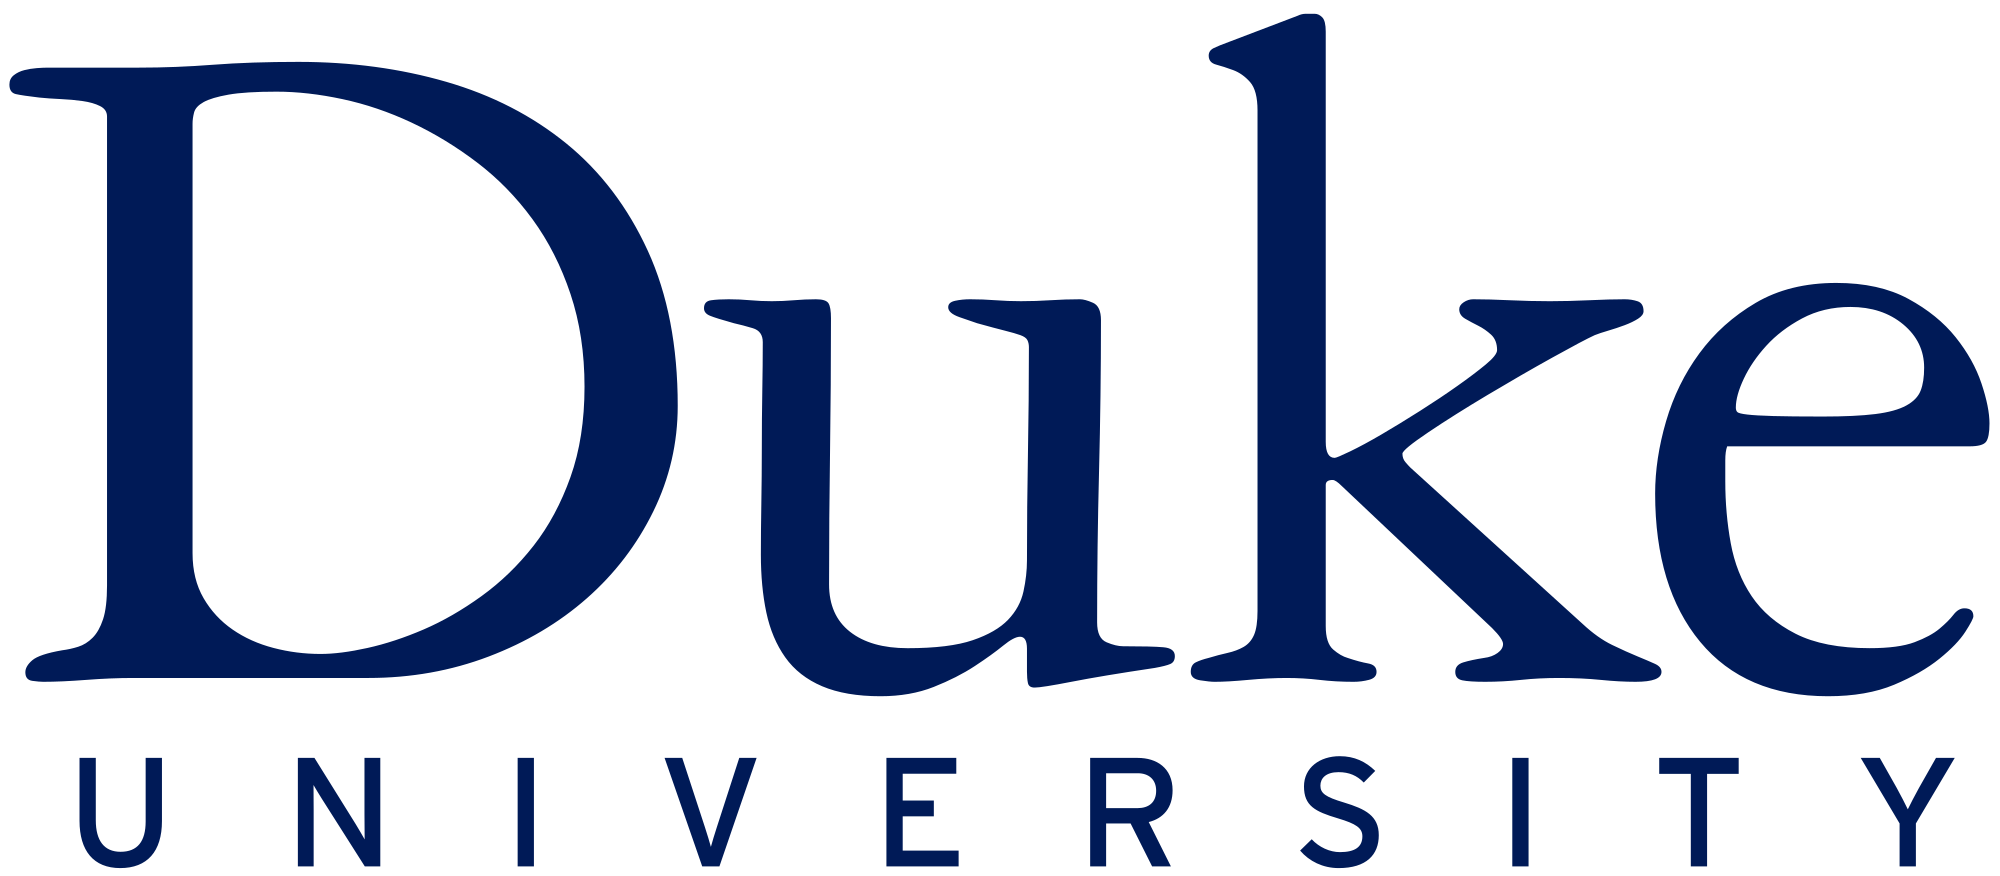 Duke Logo - Duke University logo.svg